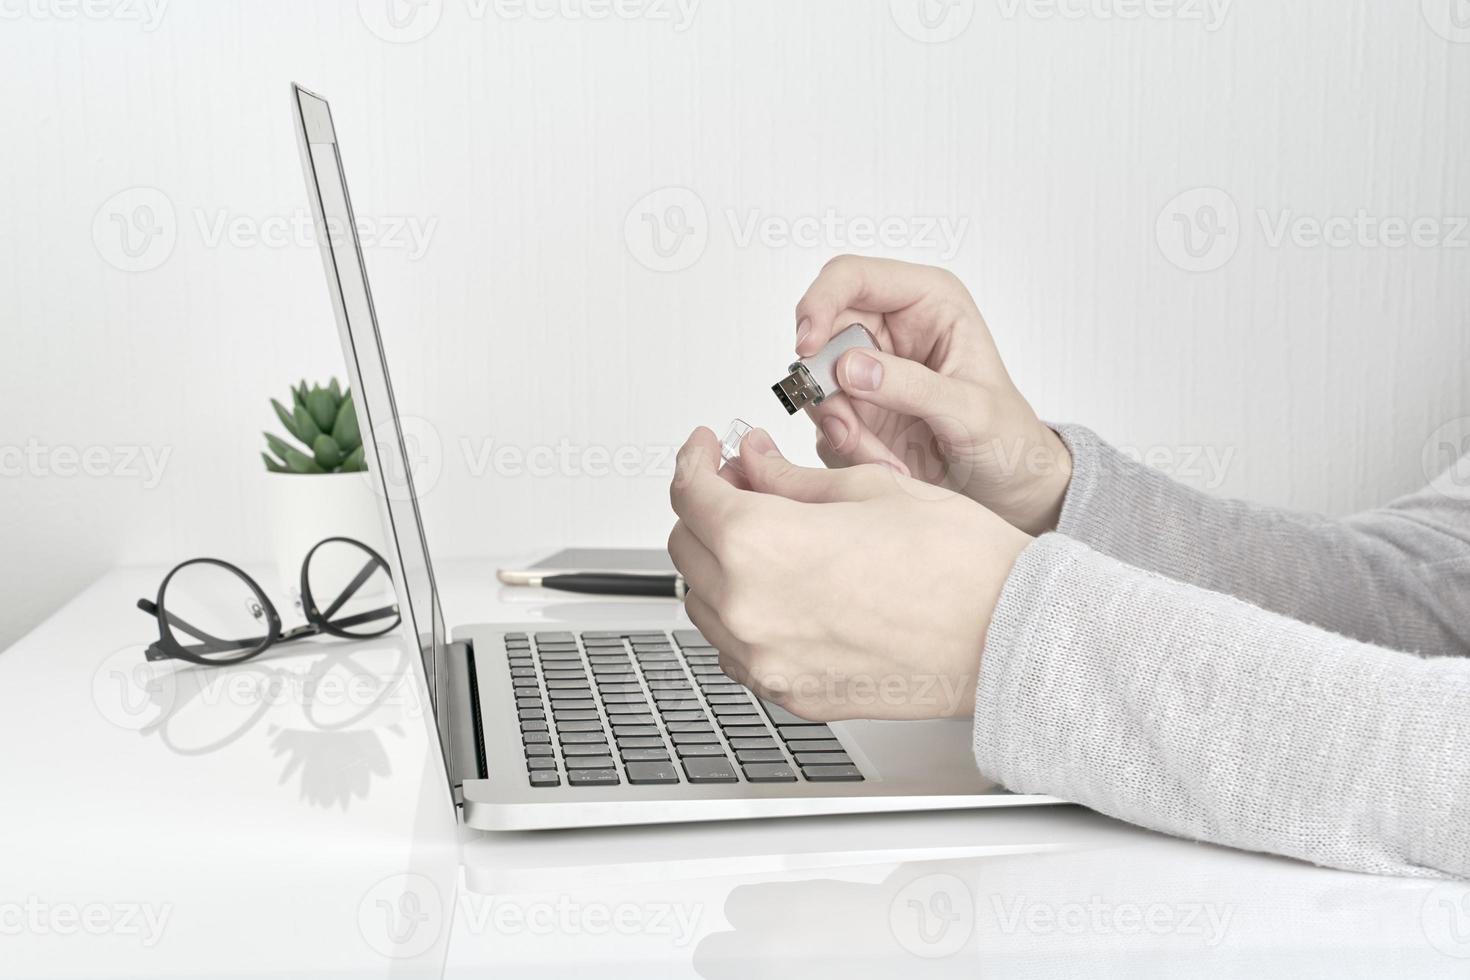 person som öppnar usb-blixt bredvid laptop, kontorsarbete koncept på vit väggbakgrund foto